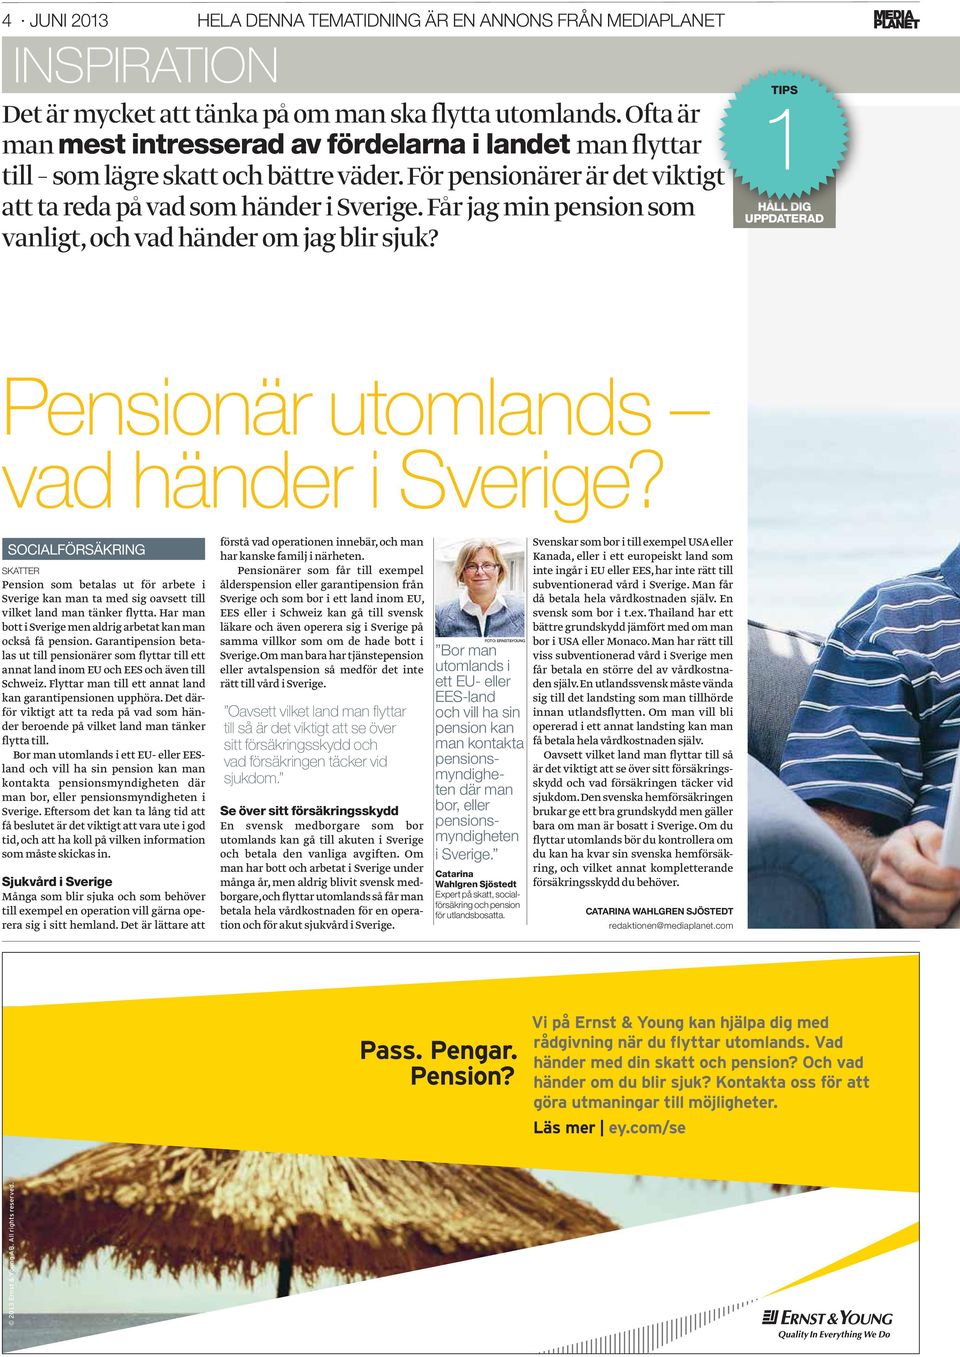 Får jag min pension som vanligt, och vad händer om jag blir sjuk? 1TIPS HÅLL DIG UPPDATERAD Pensionär utomlands vad händer i Sverige?